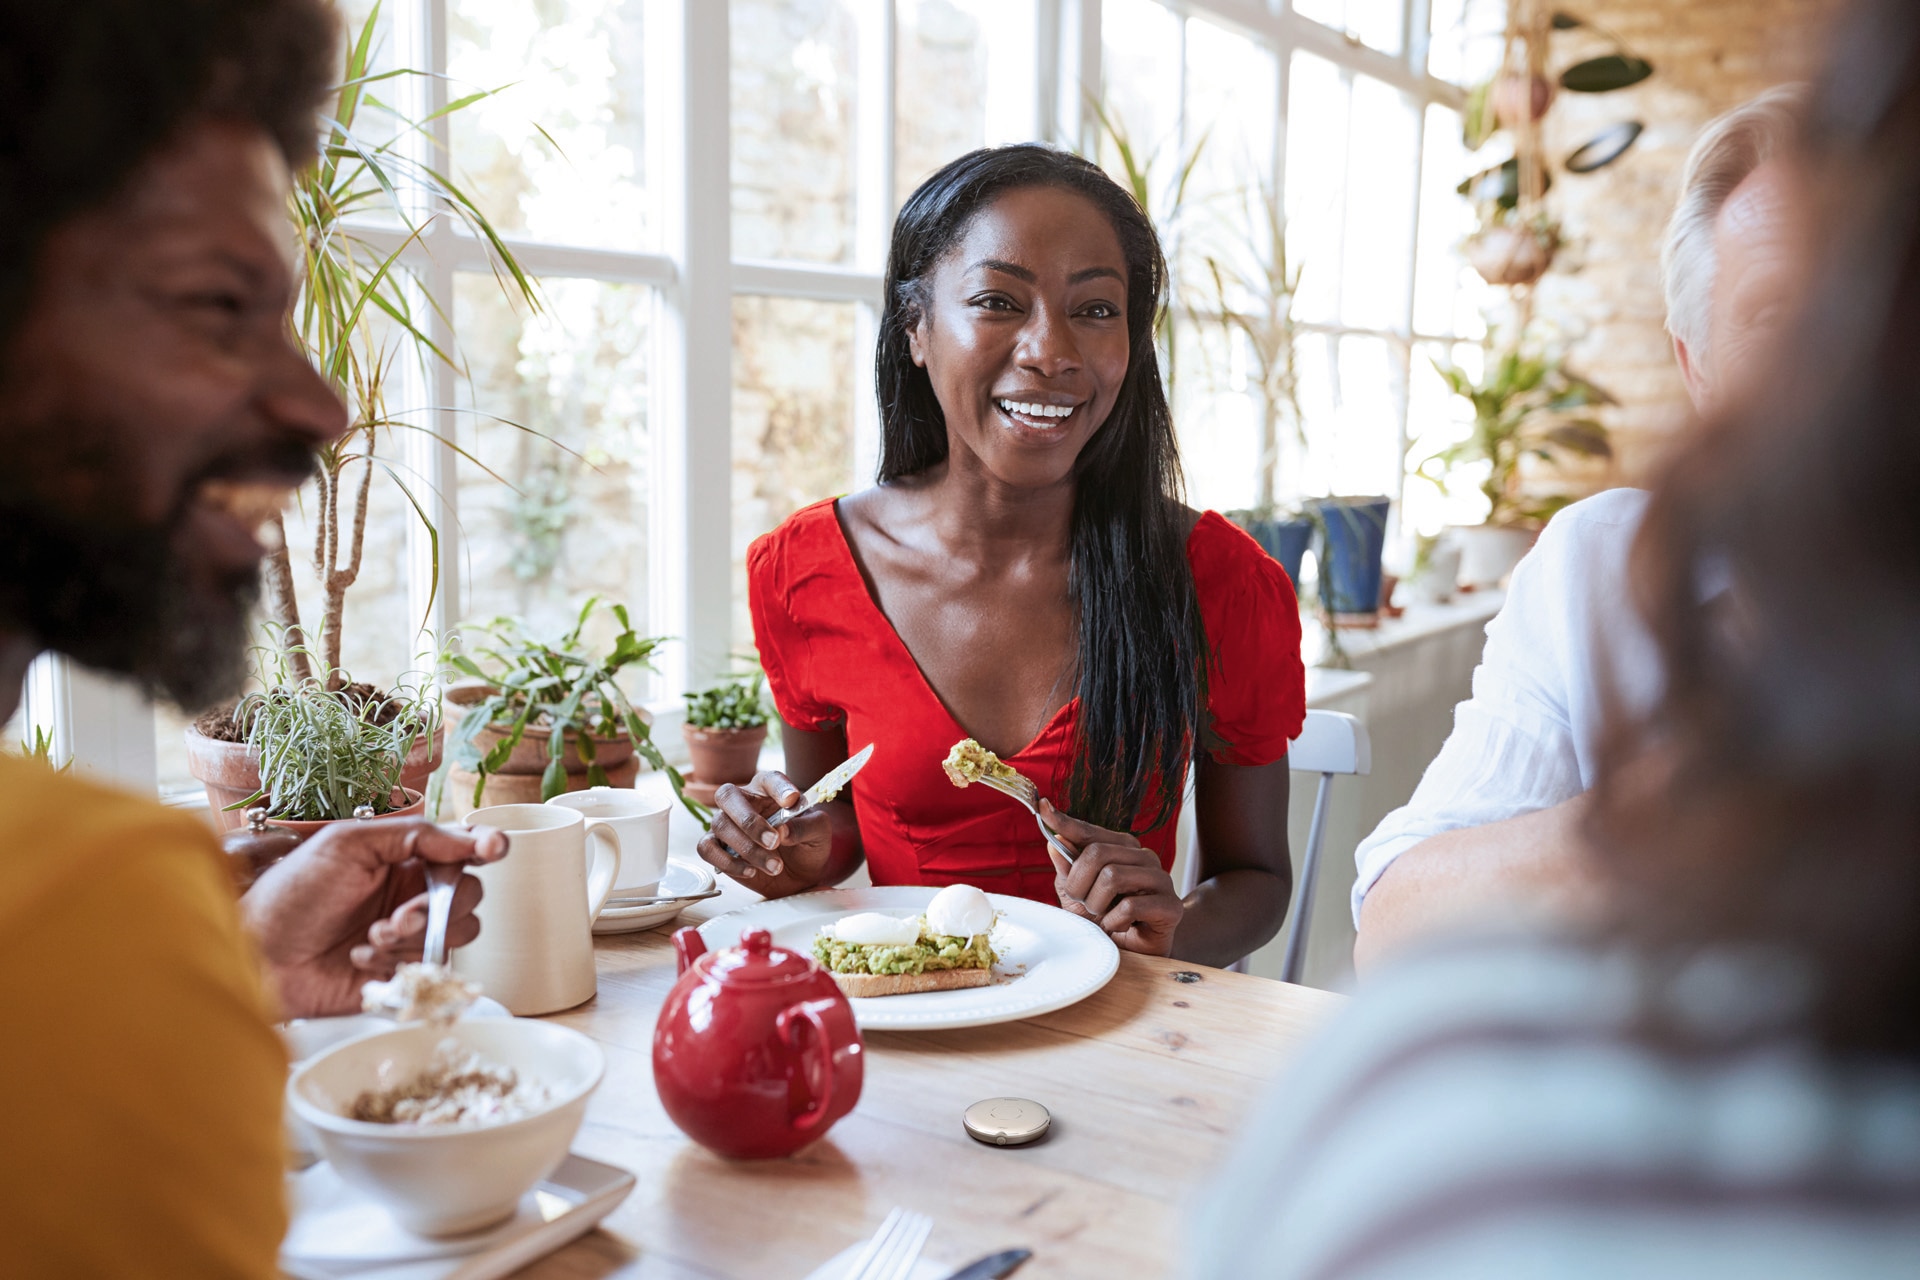 Nuori urheilullinen nainen syömässä terveellistä ruokaa ja keskustelemassa muiden pöydässä olevien kanssa. Hänen edessään on Roger Select.